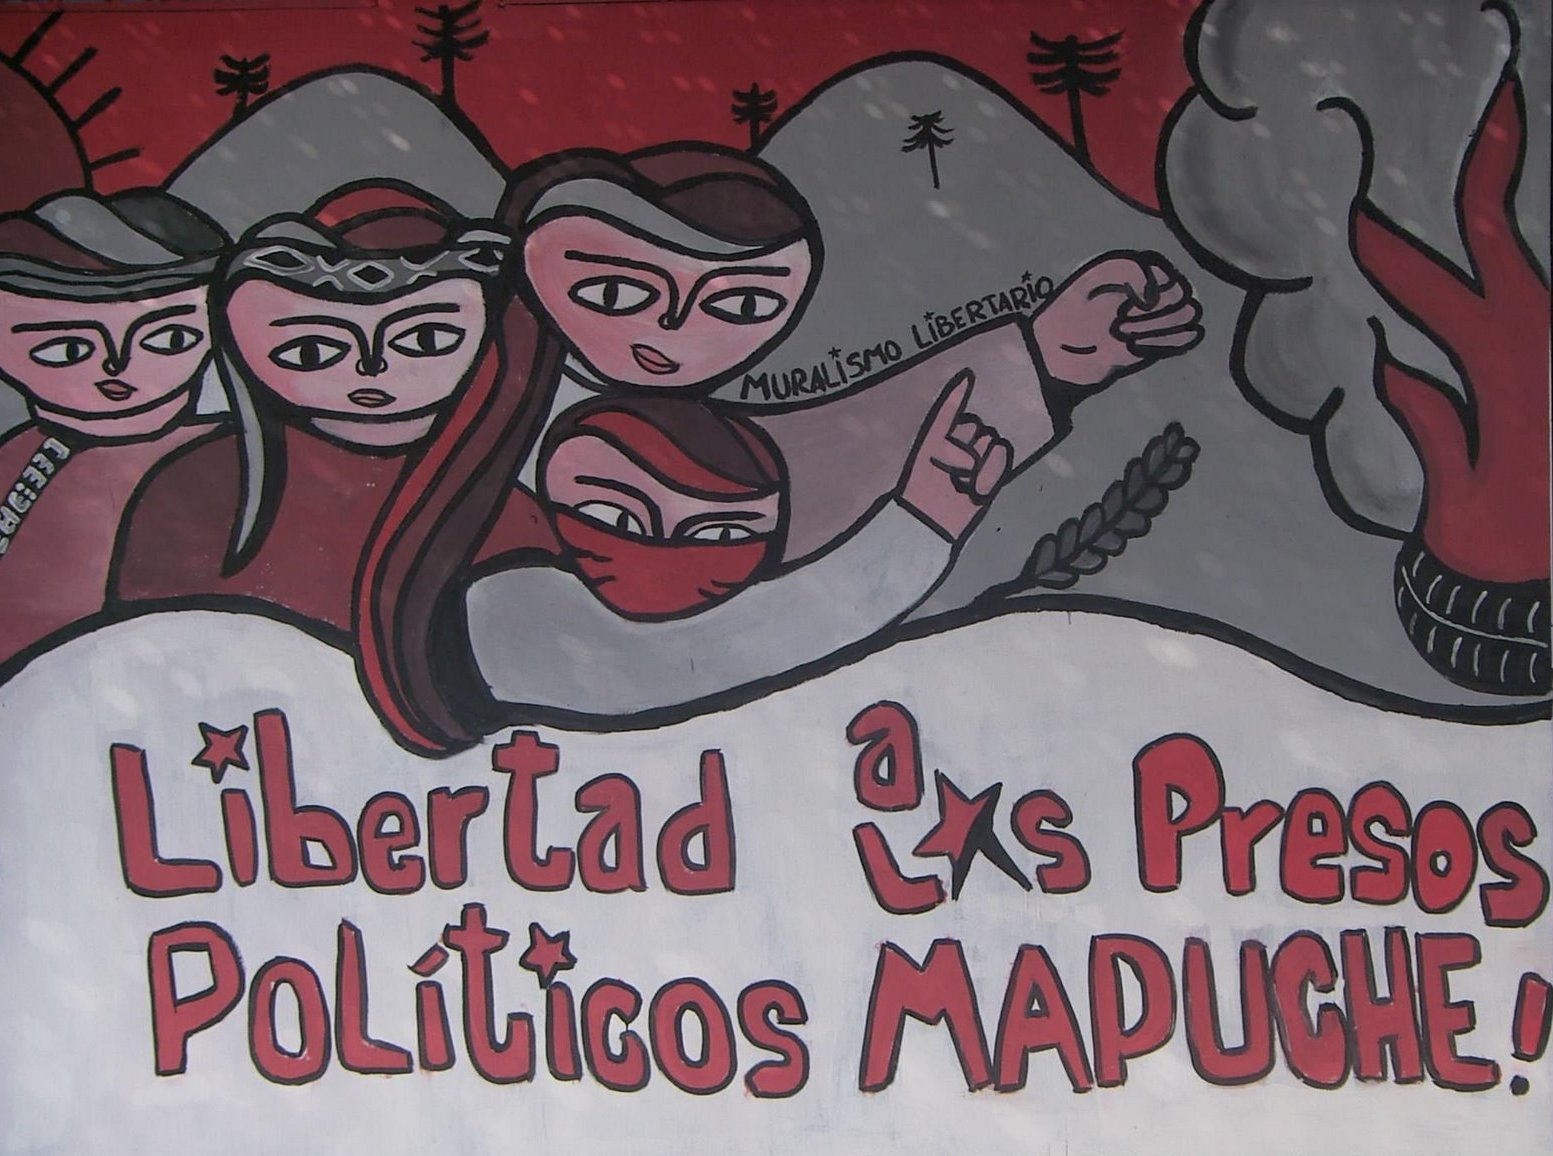  Figura 2 – Mural pintado por la Unidad Muralista Luchador Ernesto Miranda (UNLEM) – Arica exigiendo la libertad a los presos políticos mapuche, 2007. Disponível em: http://pintaylucha.blogspot.com.ar/2007/12/libertad-los-presos-polticos-mapuche_11.html